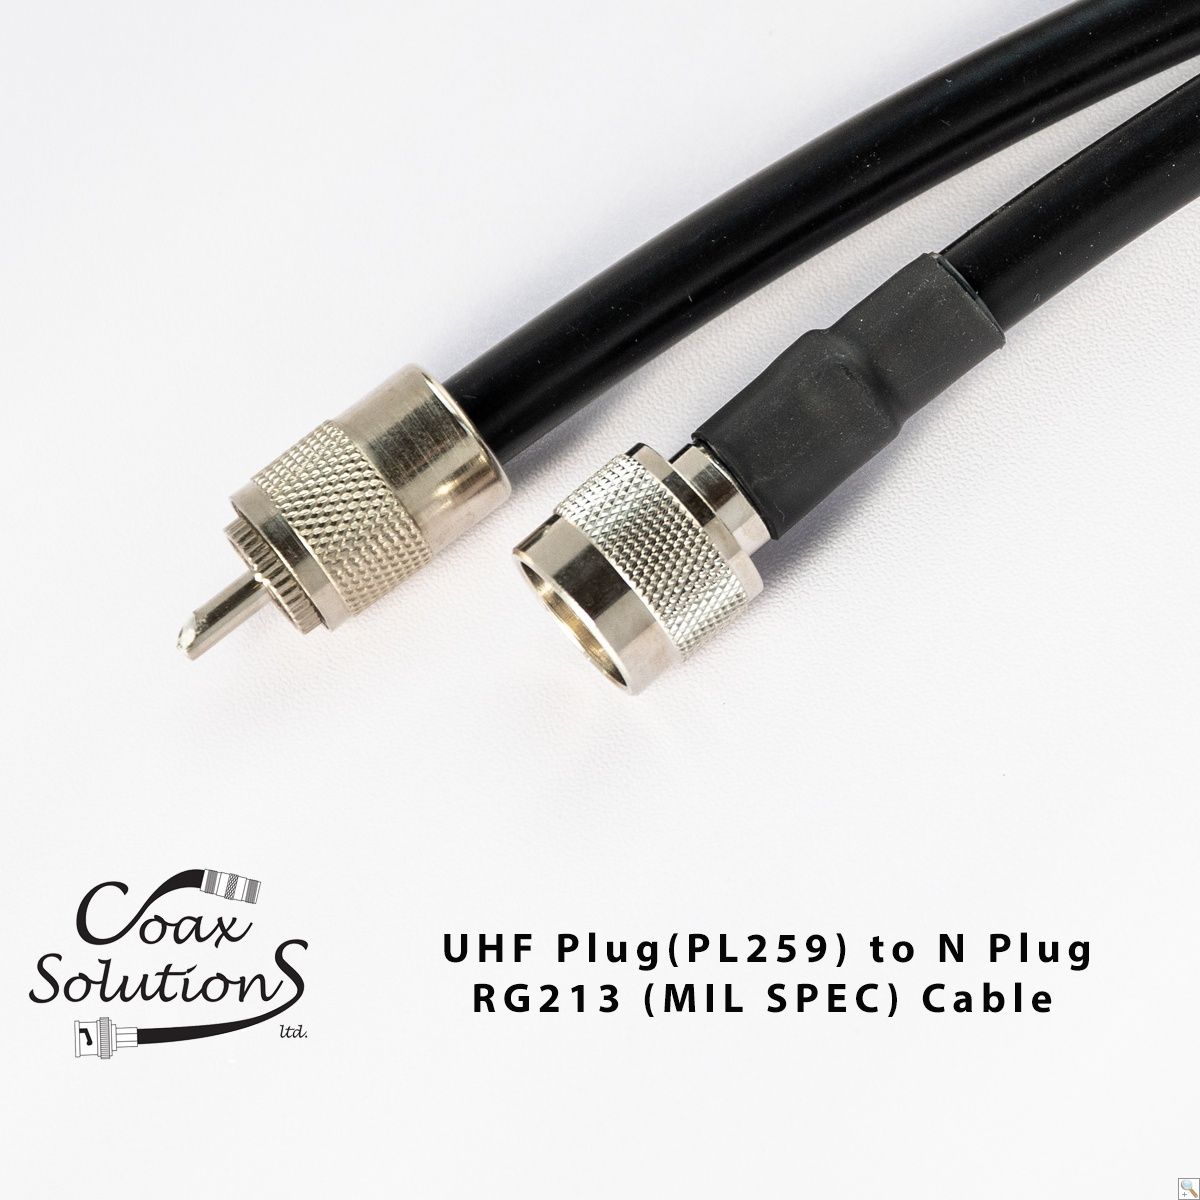 UHF Plug (PL259) to N Plug RG213(Mil) Patch lead